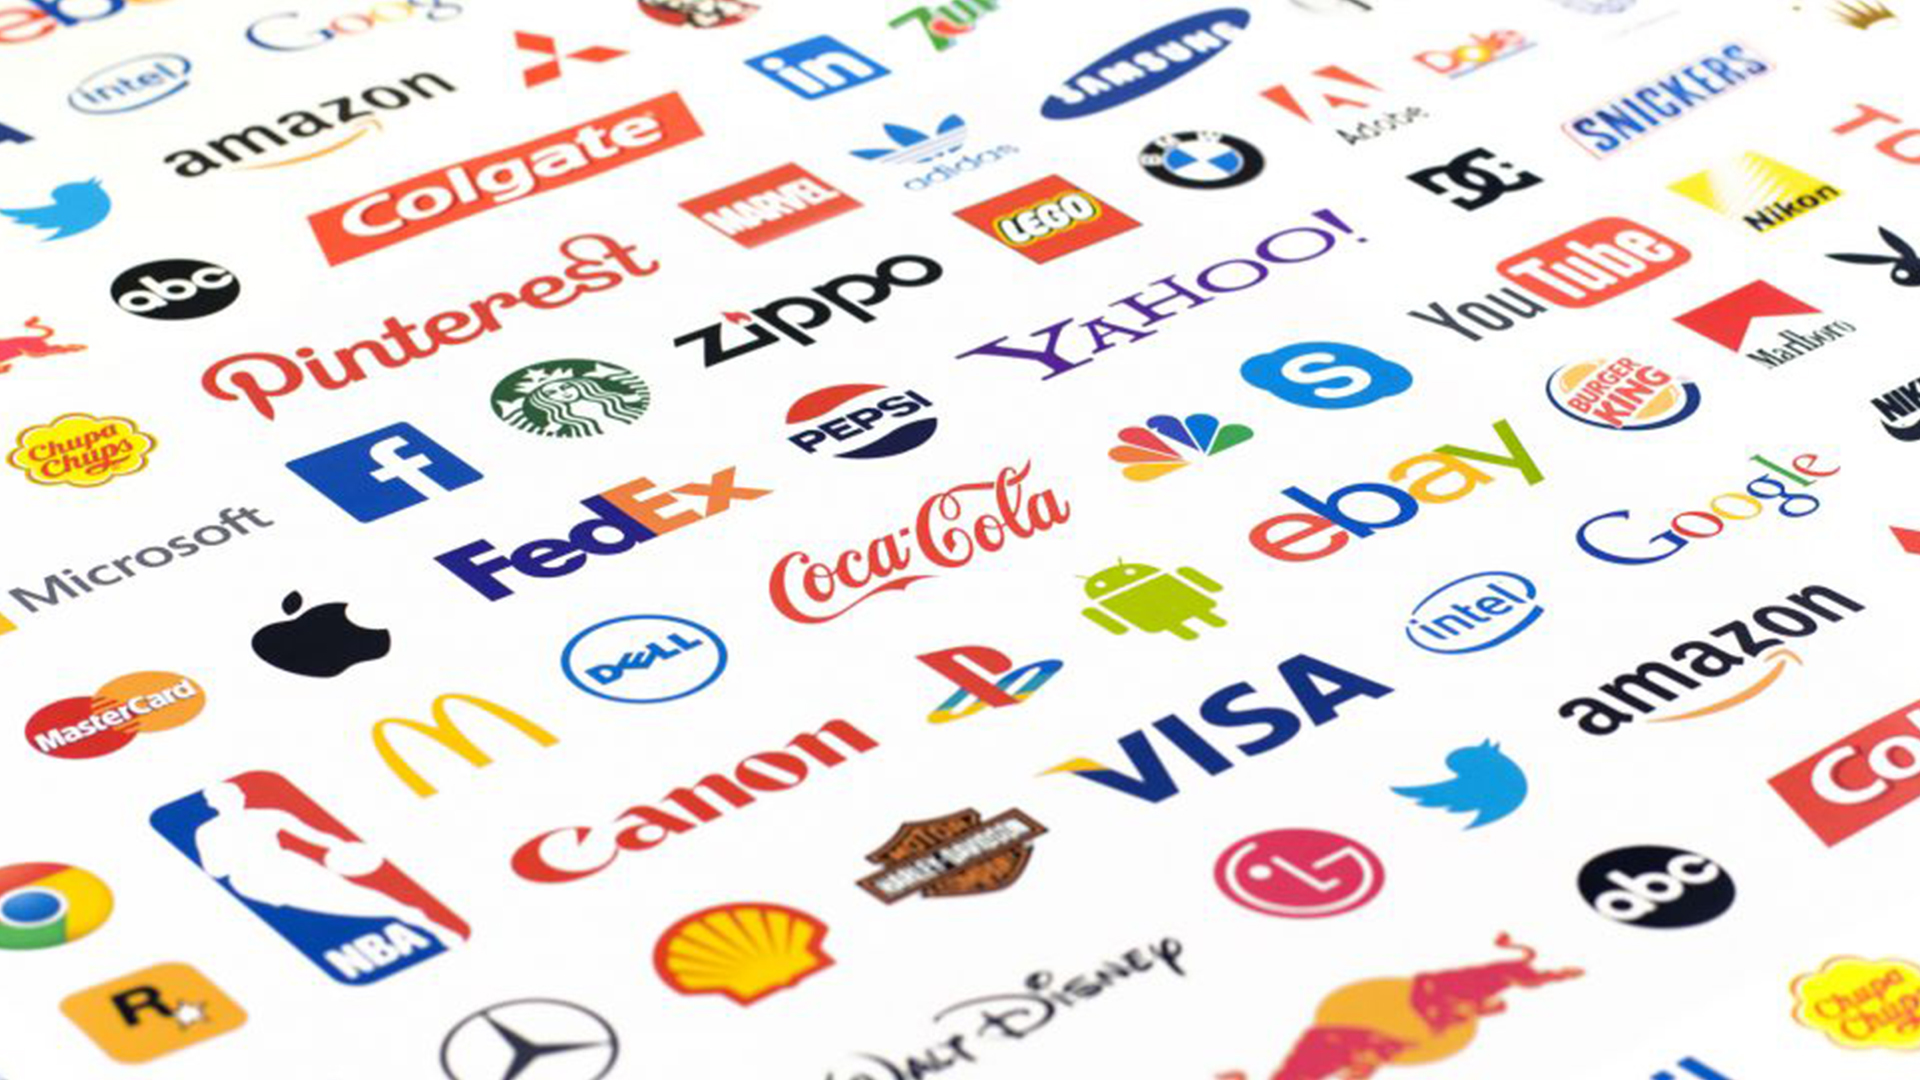 imagem marcas que ilustra o post sobre definição de termos como logo, logomarca, logotipo e branding